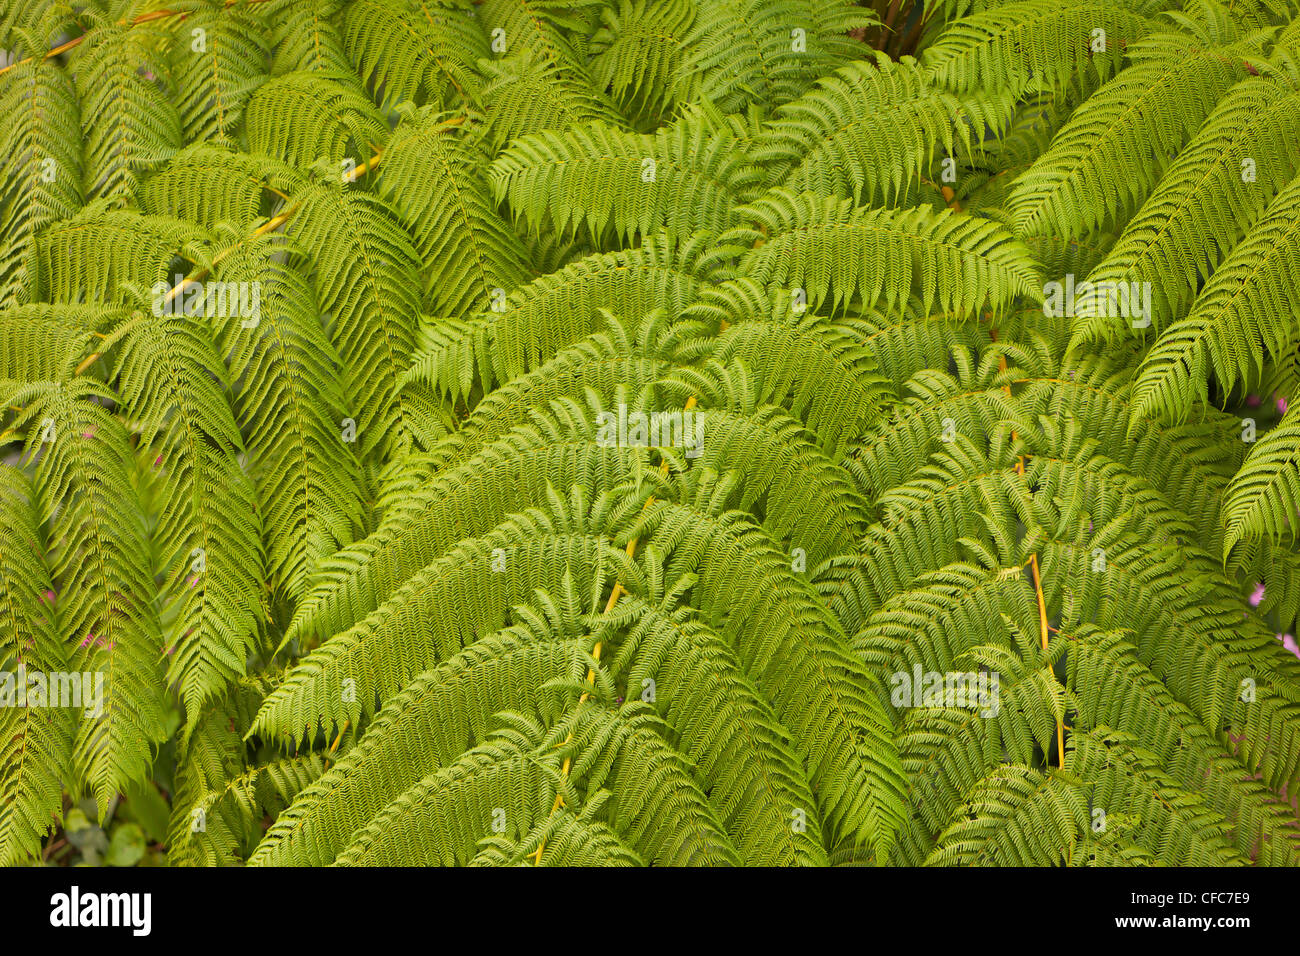 EL YUNQUE NATIONAL FOREST, PUERTO RICO - Farne im Regenwald. Stockfoto